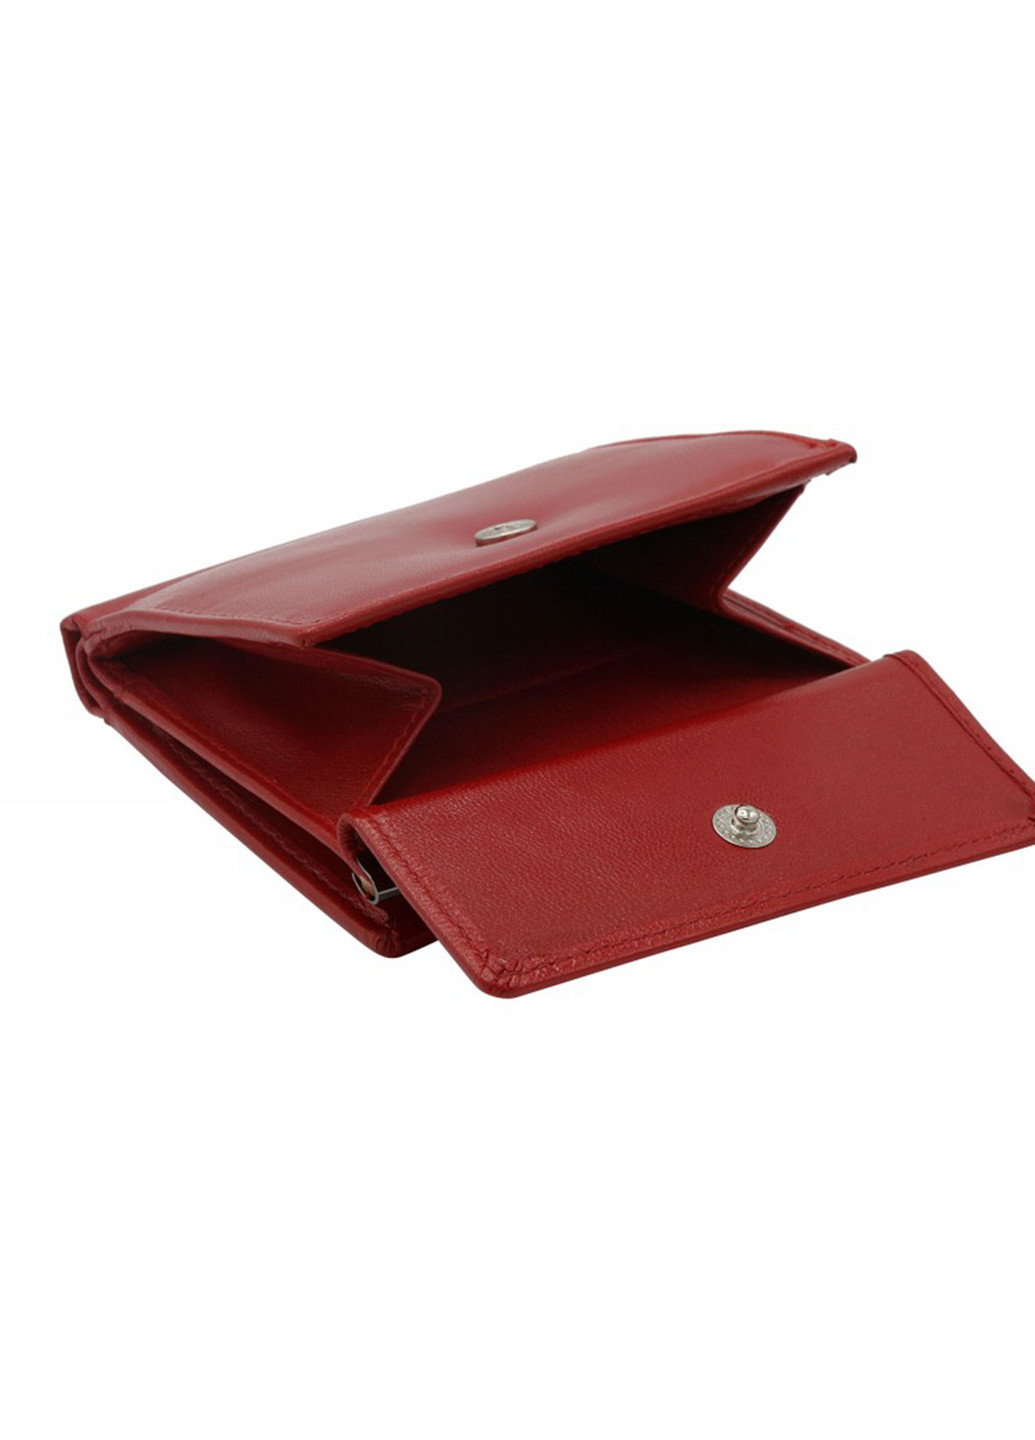 Женский кожаный кошелек маленький красный RD-16 GCL red Cavaldi (242861626)